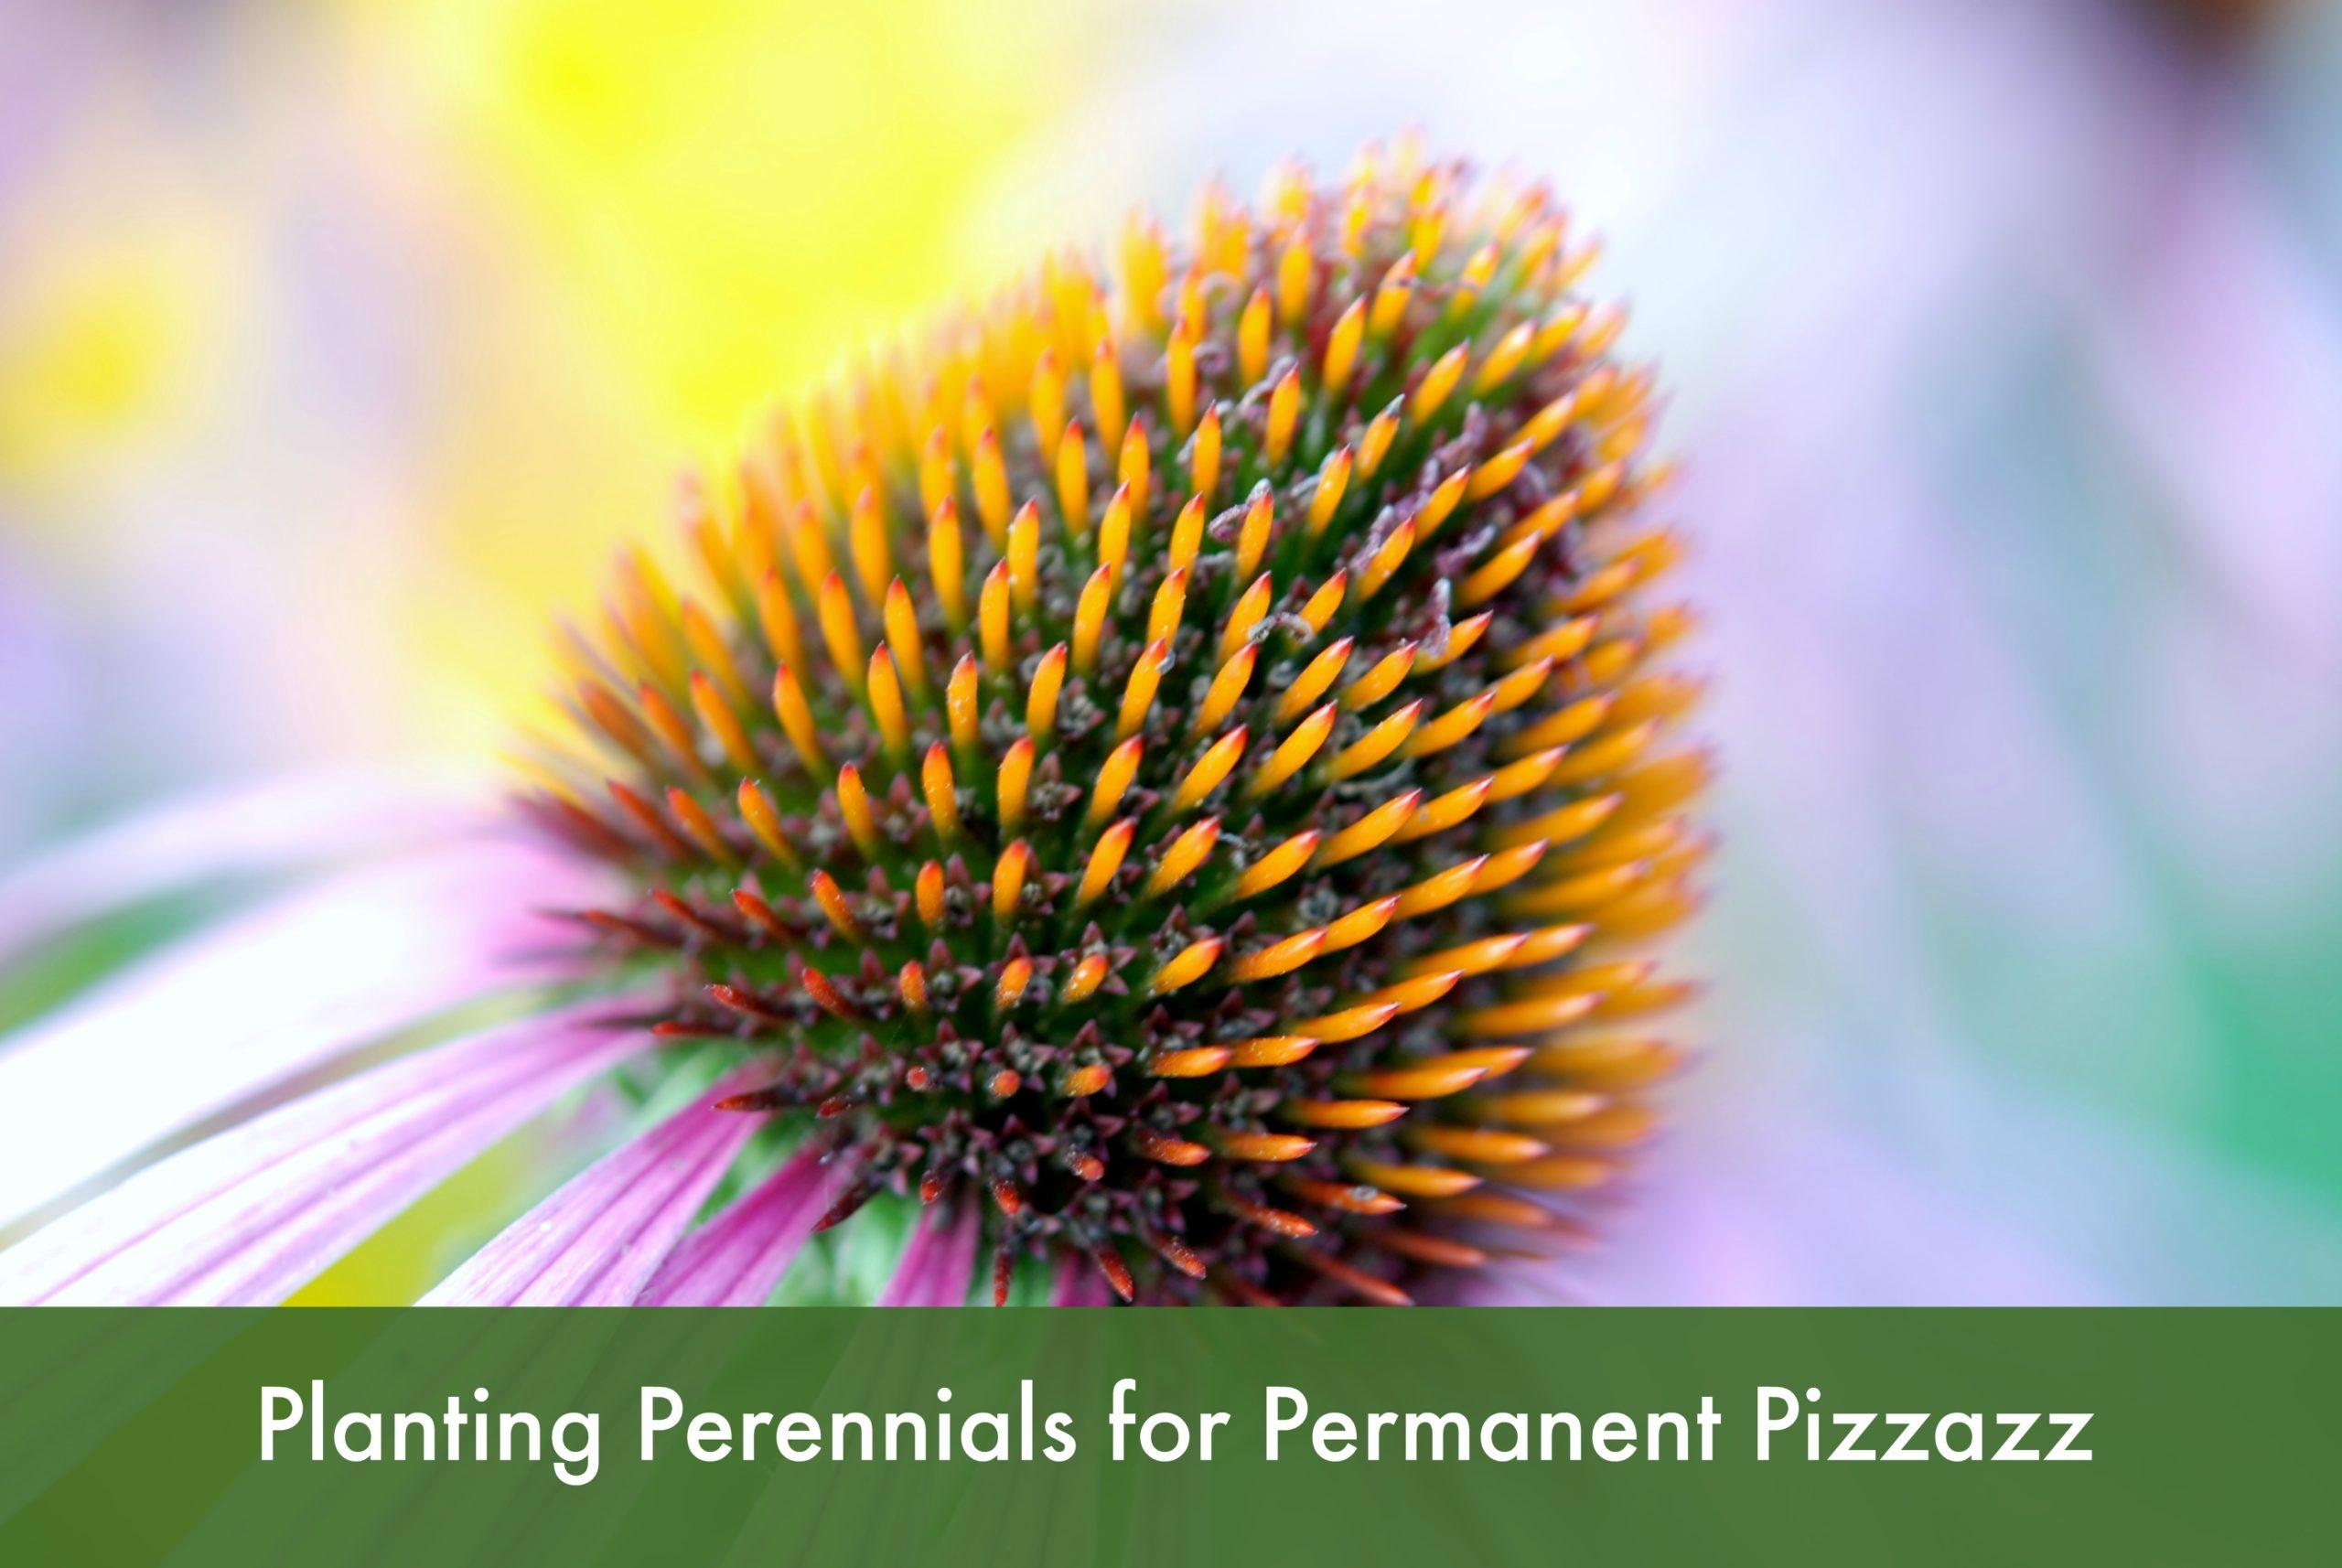 Plant Perennials for Permenant Pizzazz